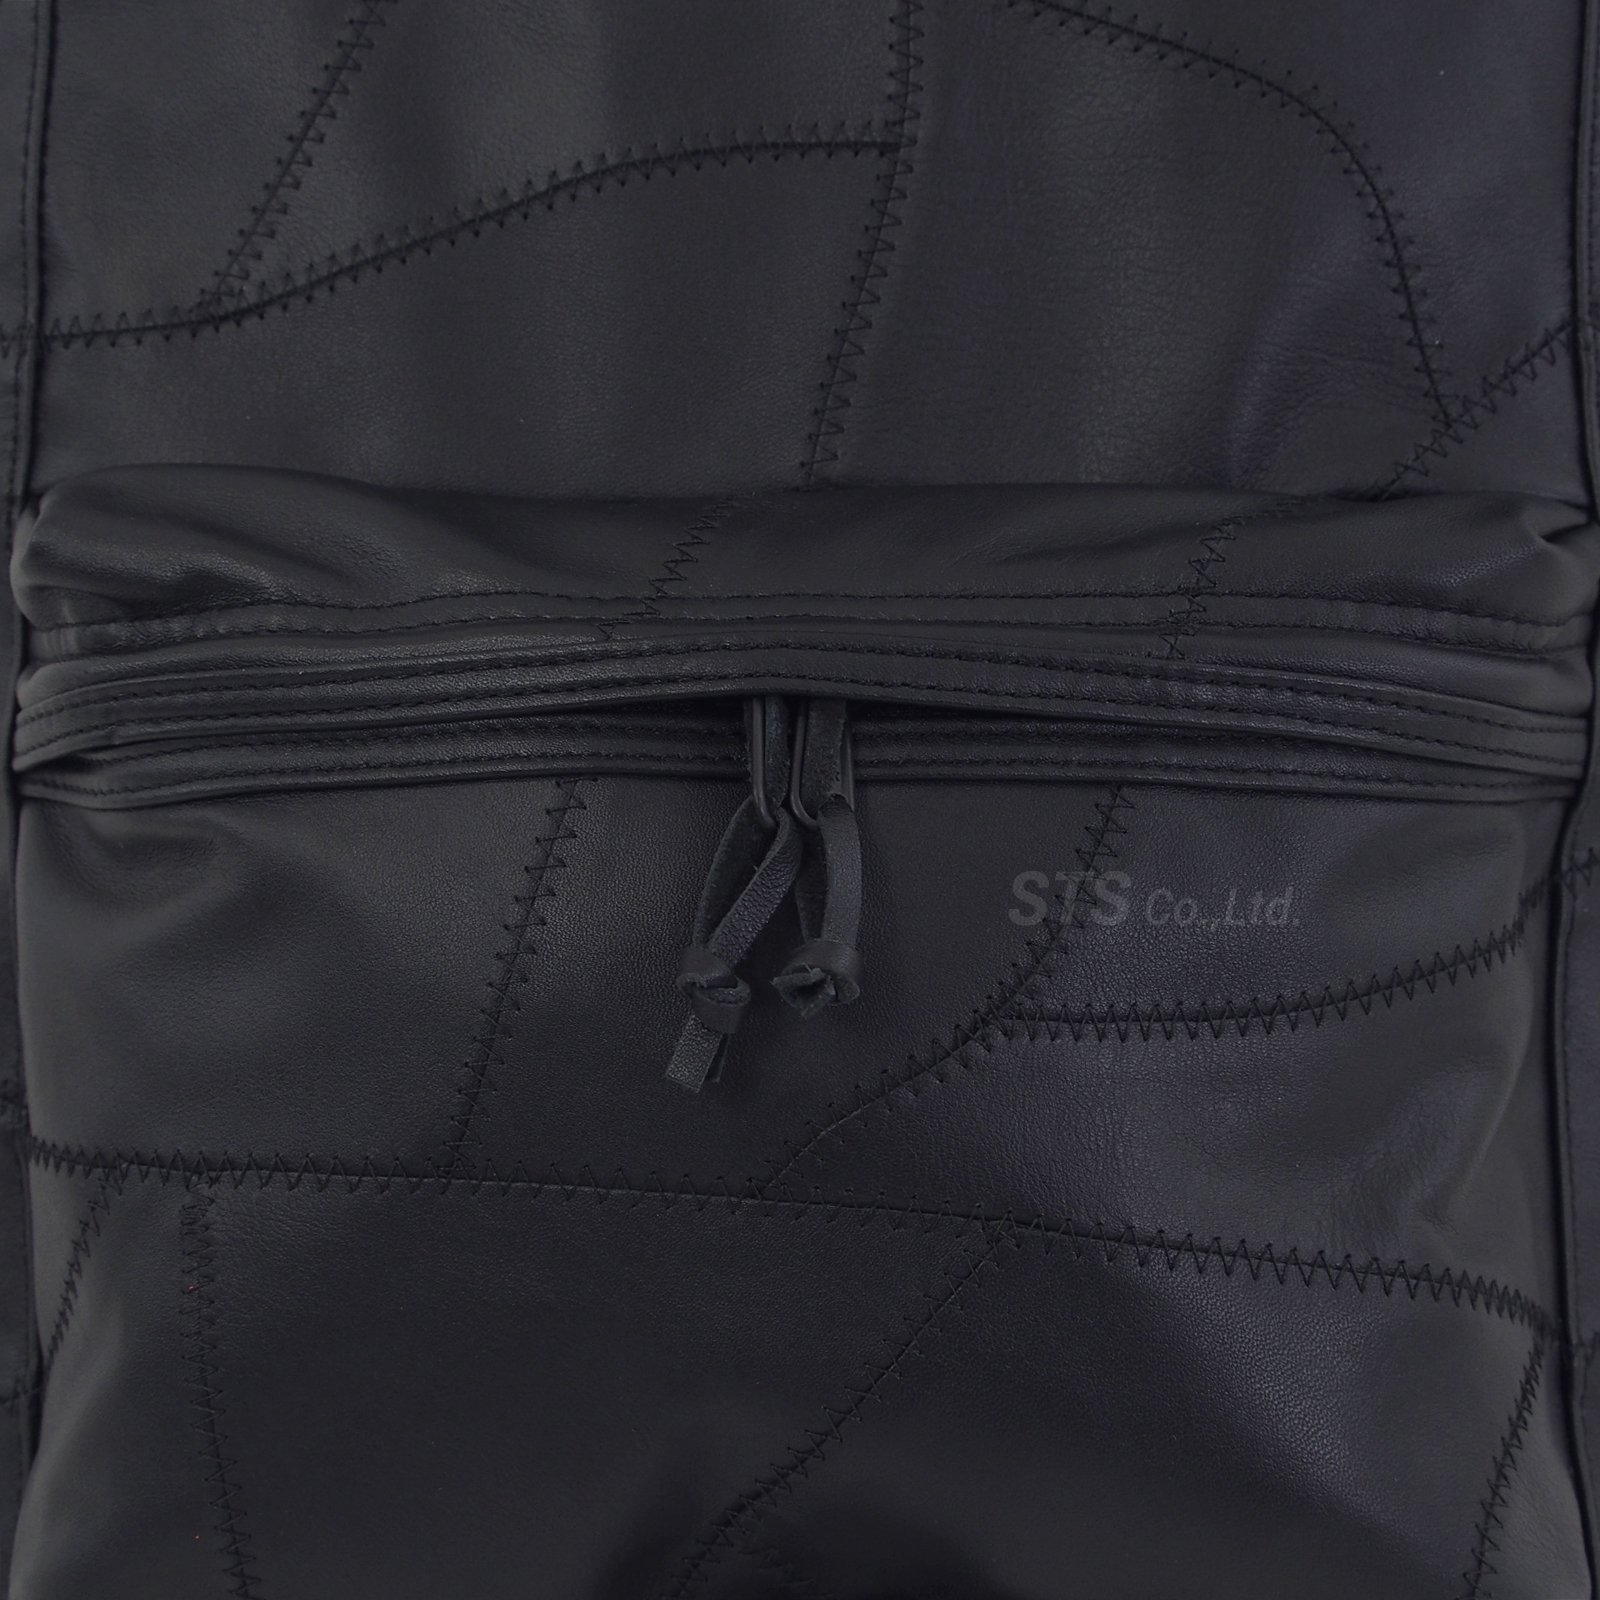 Supreme - Patchwork Leather Backpack - ParkSIDER